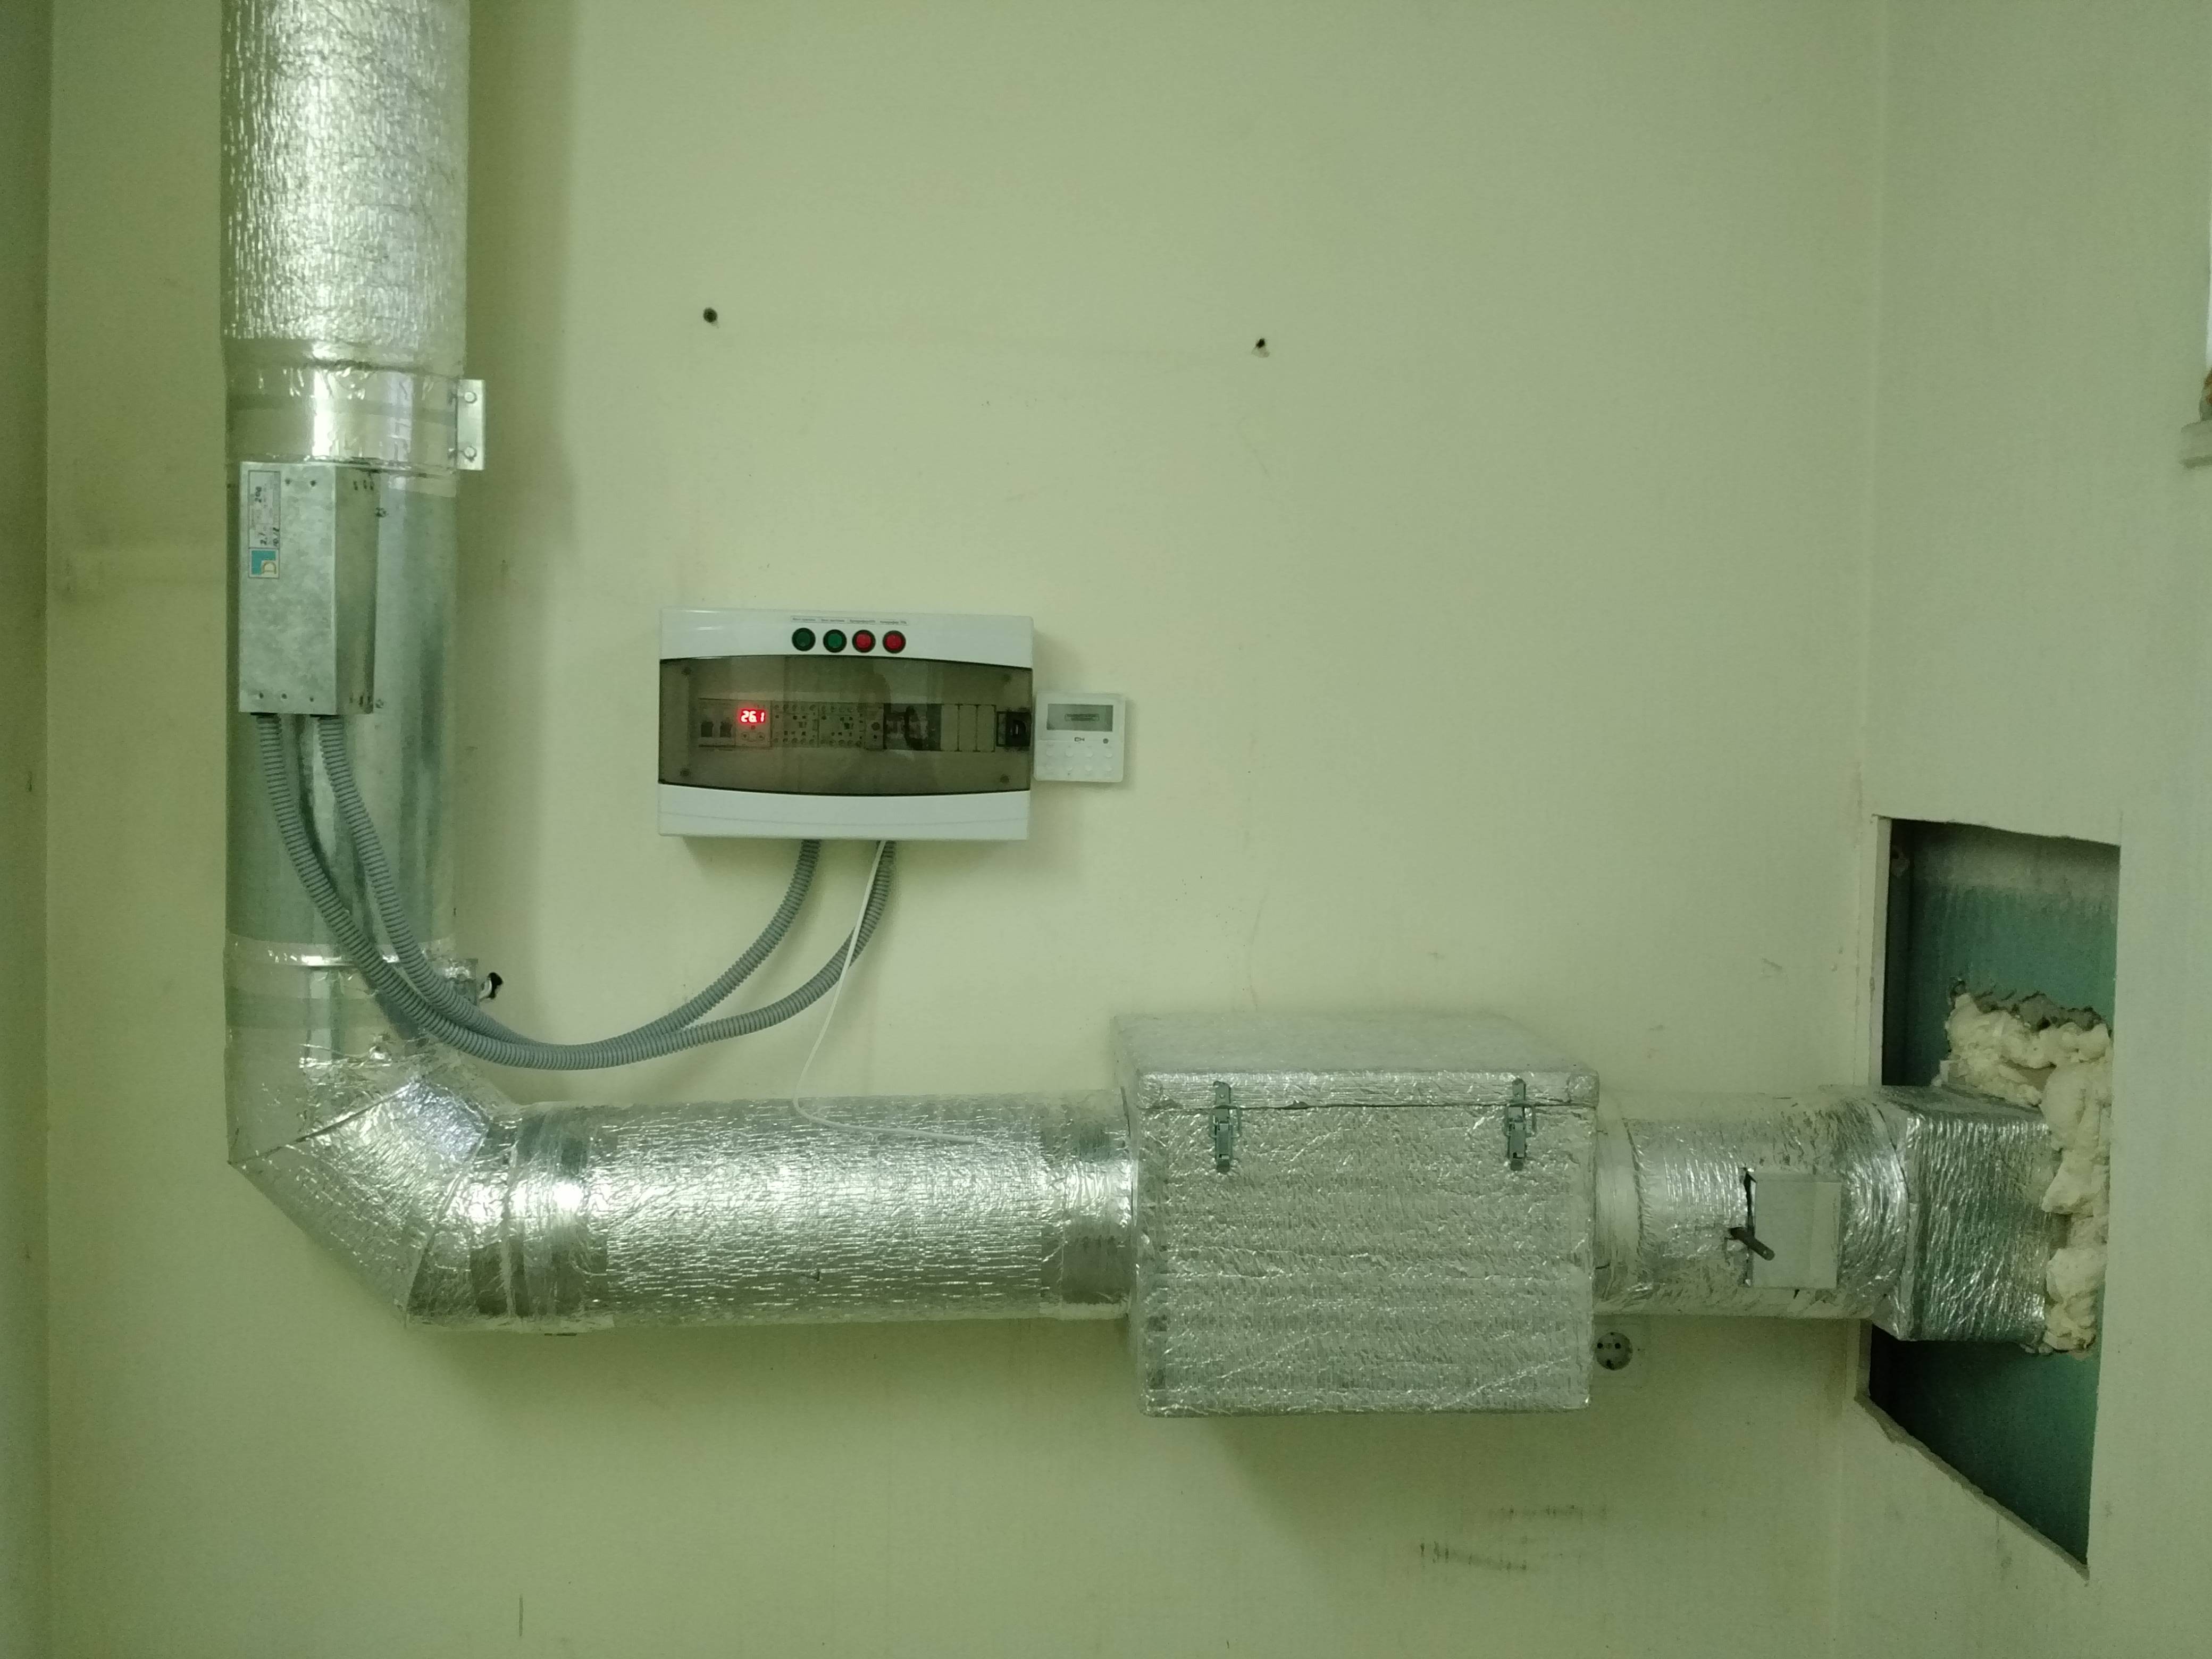 Приточная вентиляция (клапан) с подогревом воздуха для квартиры: выбор, преимущества, установка